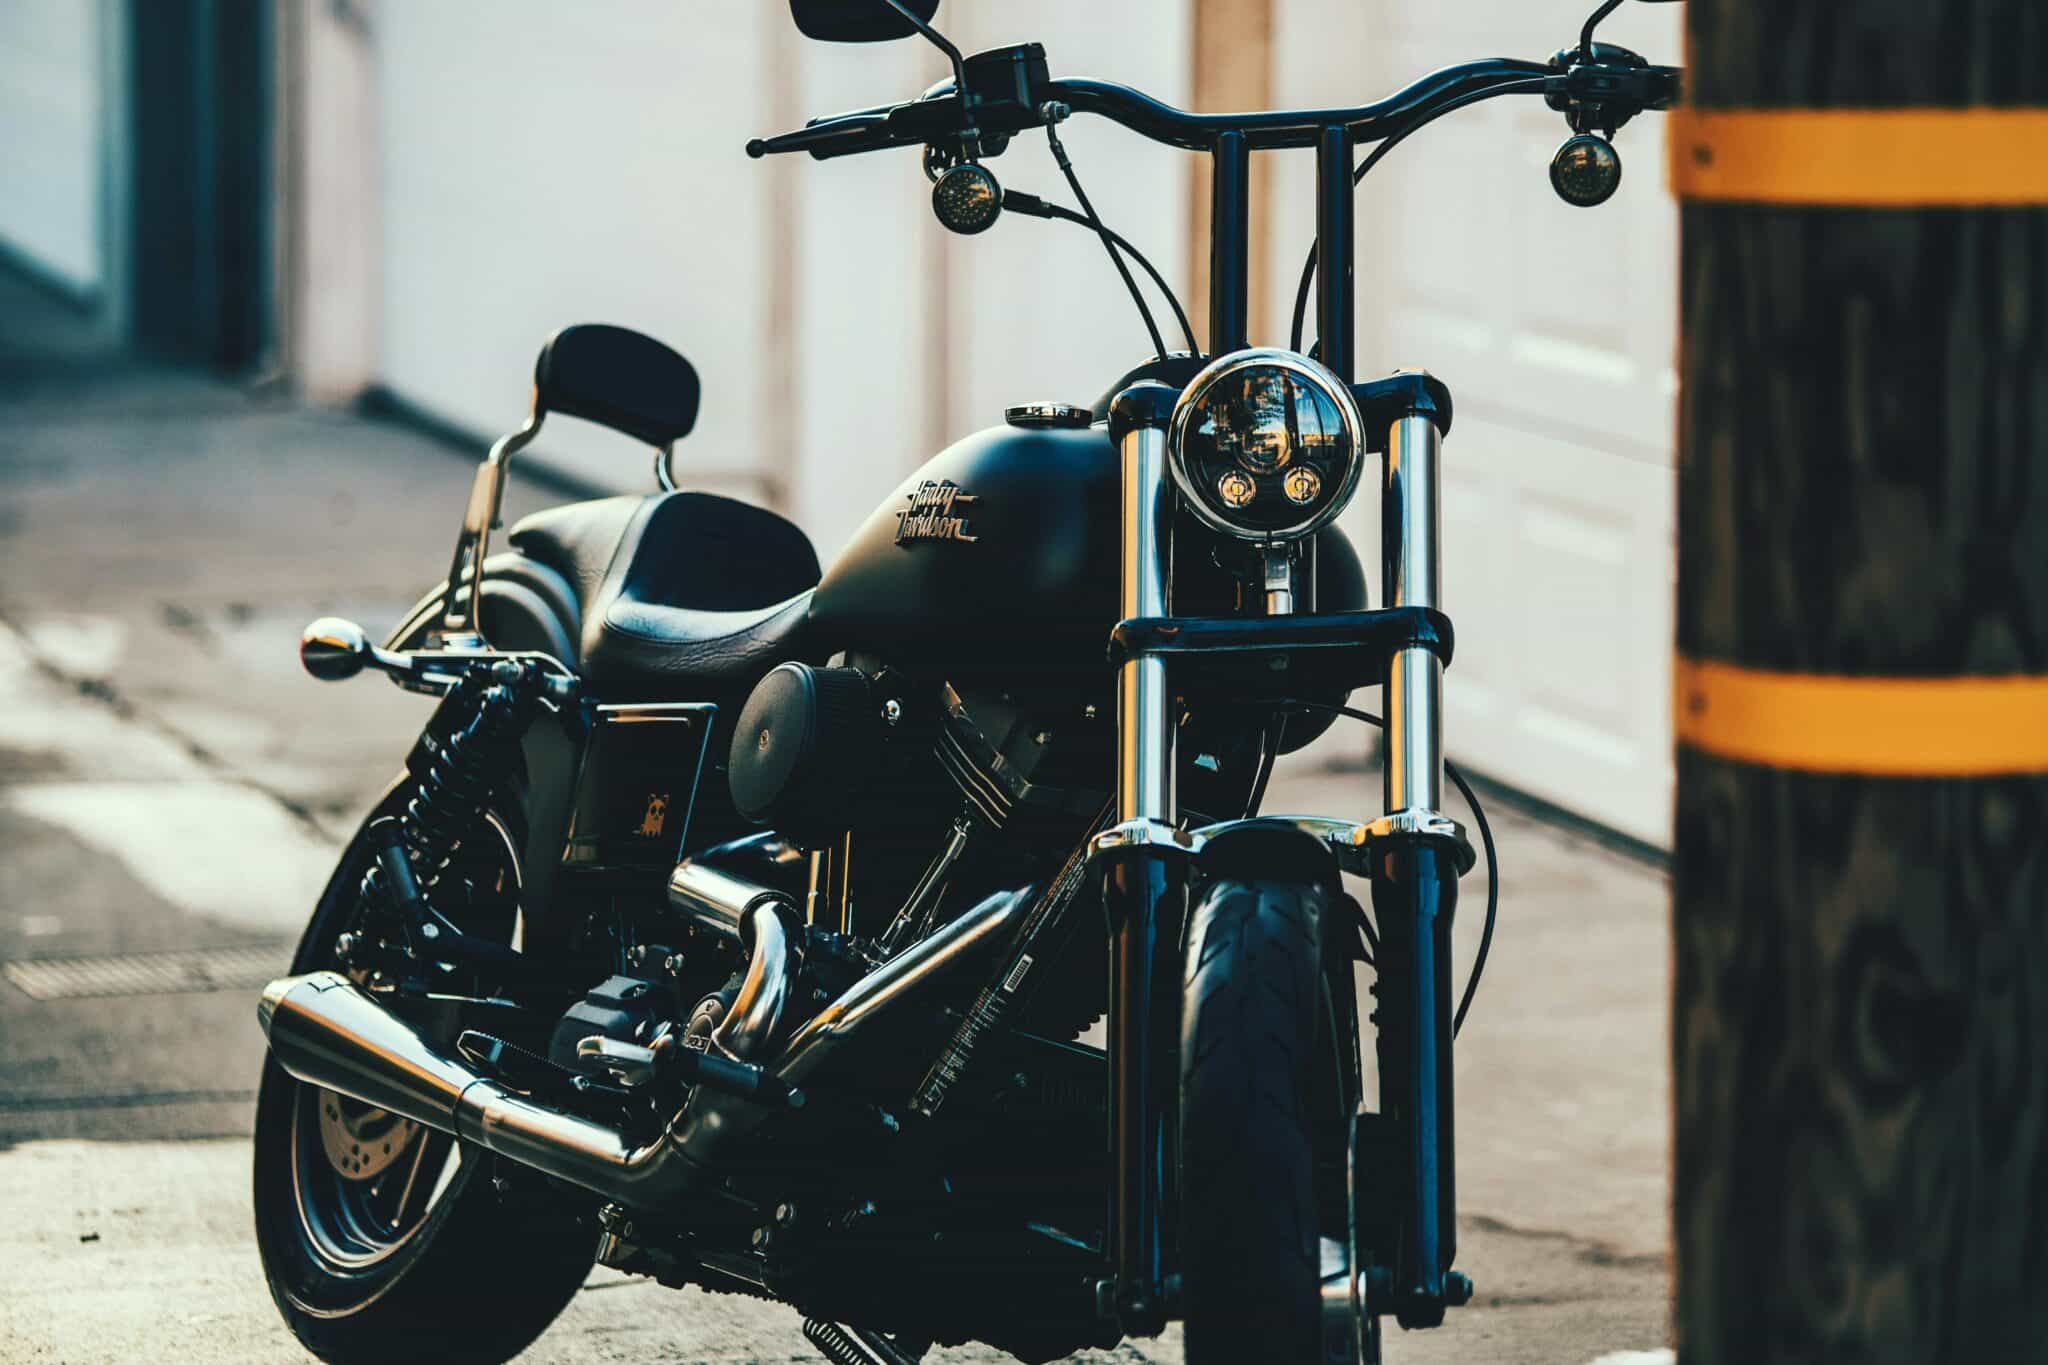 trouvez la meilleure assurance moto pour vous protéger sur la route avec nos offres d'assurance moto adaptées à vos besoins.